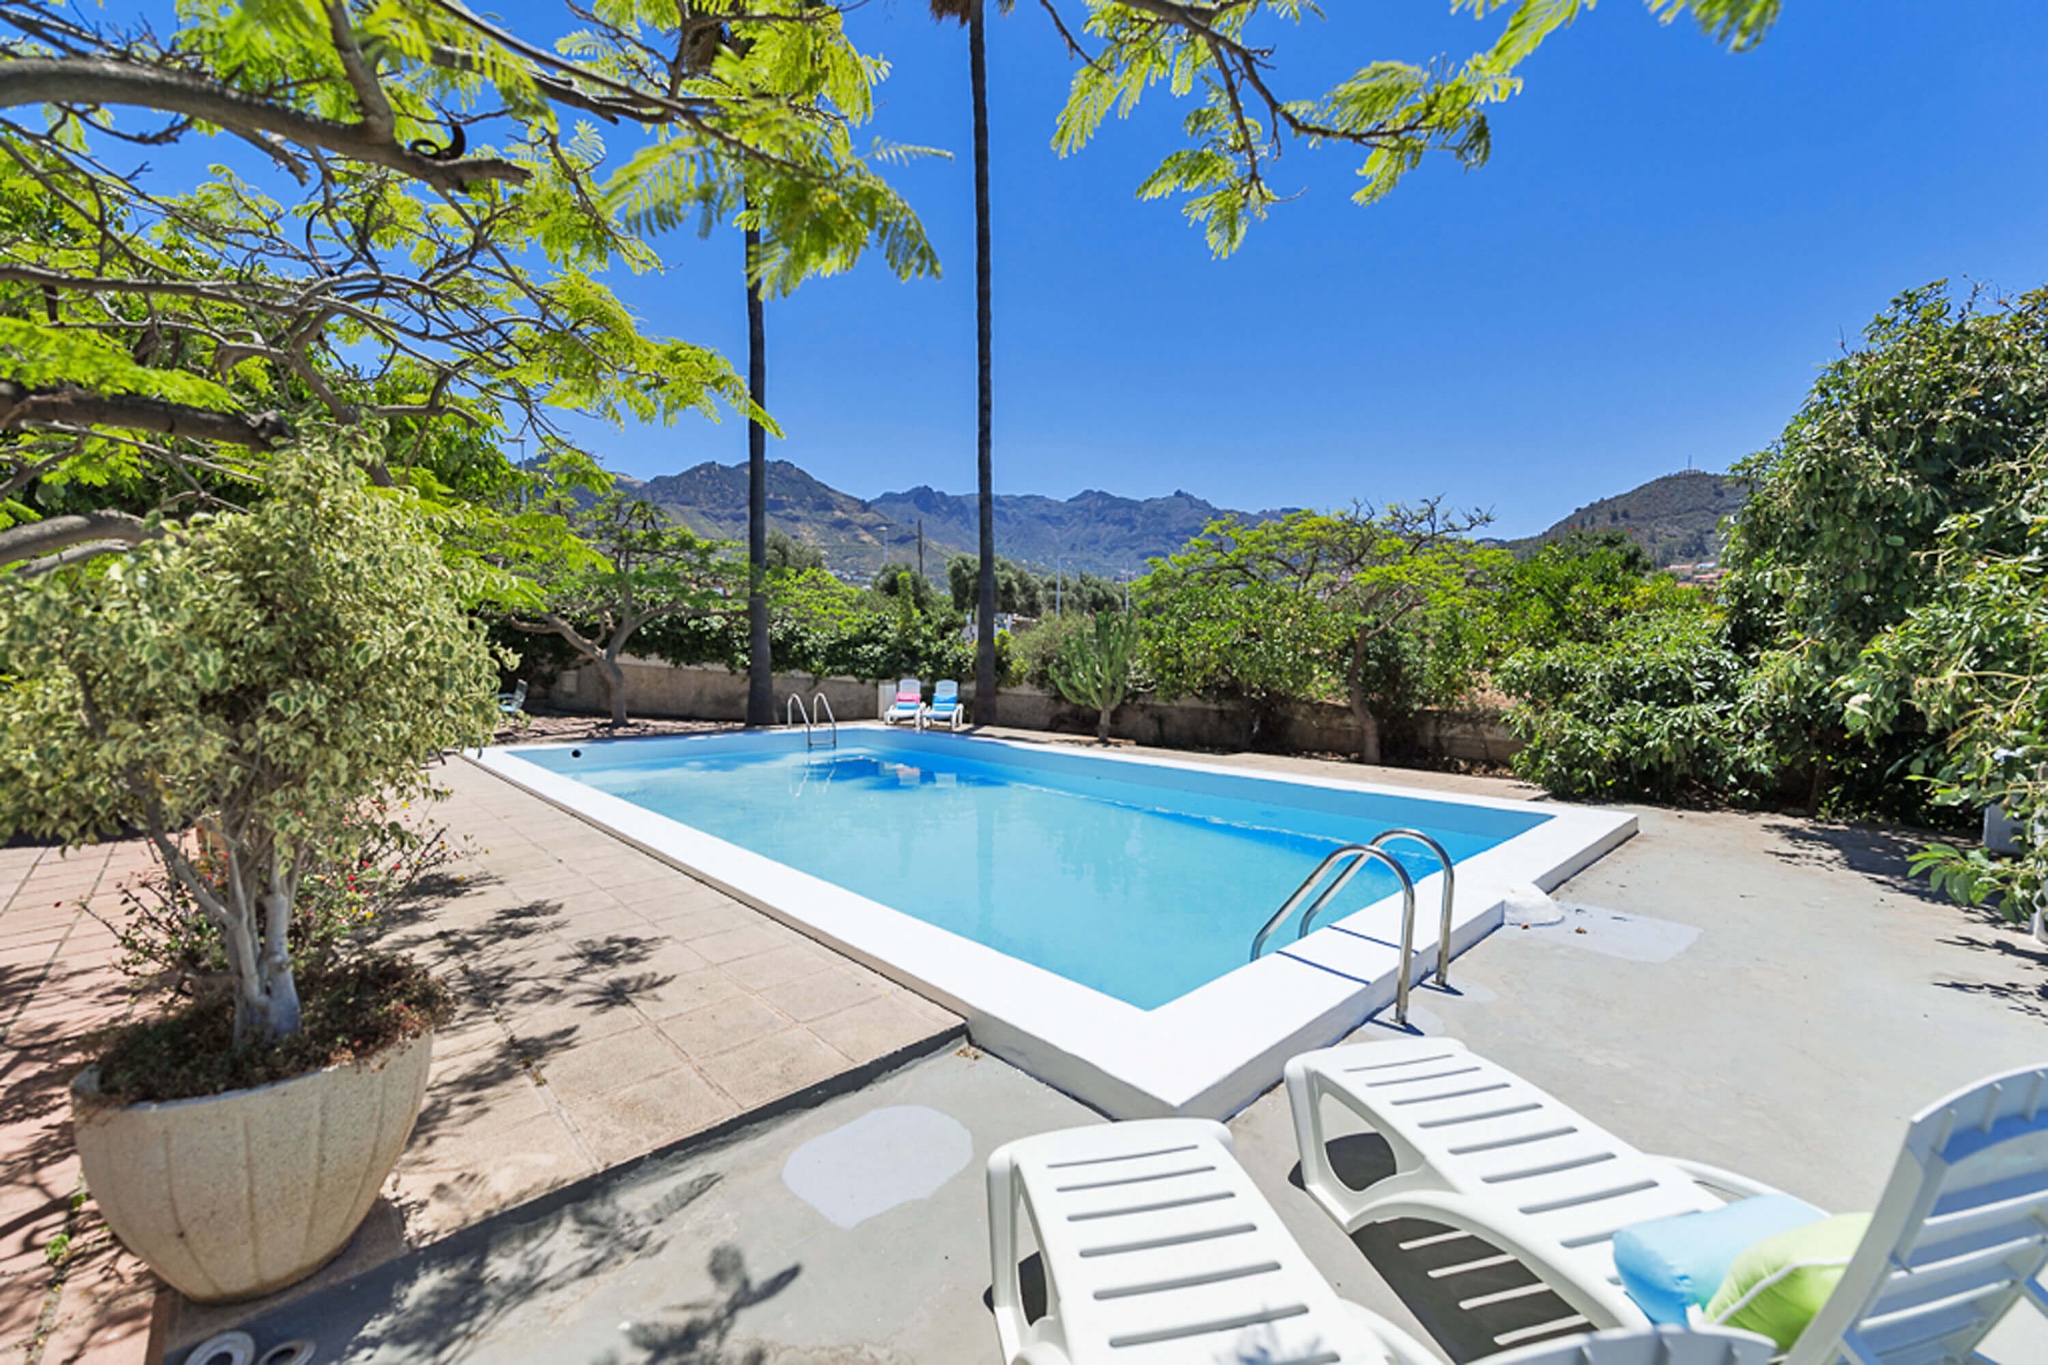 Geräumige Finca mit 4 Schlafzimmern und 2 Wohnzimmern mit privatem Pool in der schönen Gegend von Valsequillo mit Blick auf die Berge